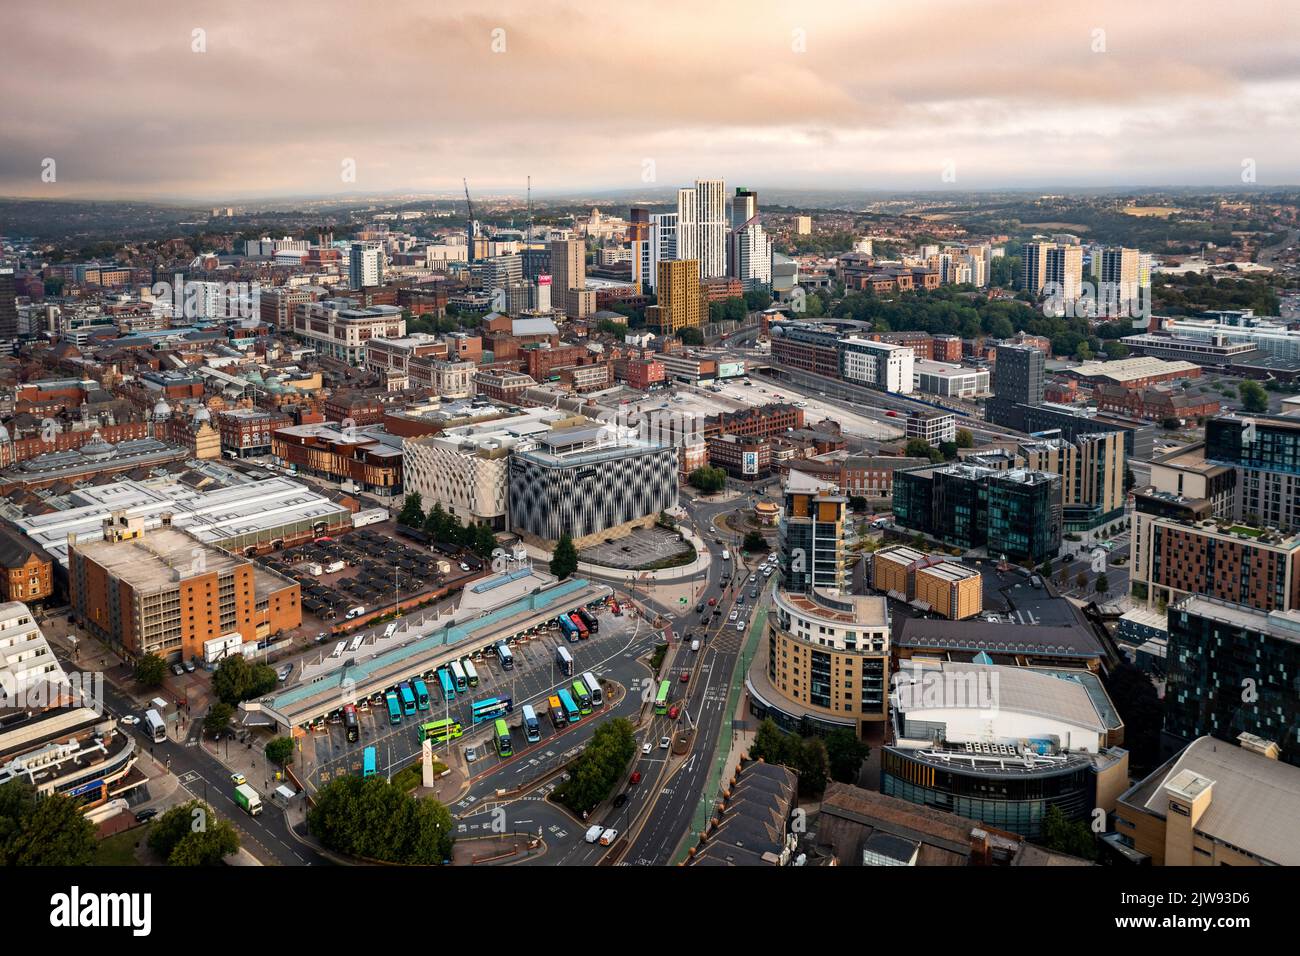 LEEDS, GROSSBRITANNIEN - 2. SEPTEMBER 2022. Luftpanorama des Stadtzentrums von Leeds mit Busbahnhof und Victoria Einkaufszentrum, das bei einer dramatischen Sonne auffällig ist Stockfoto